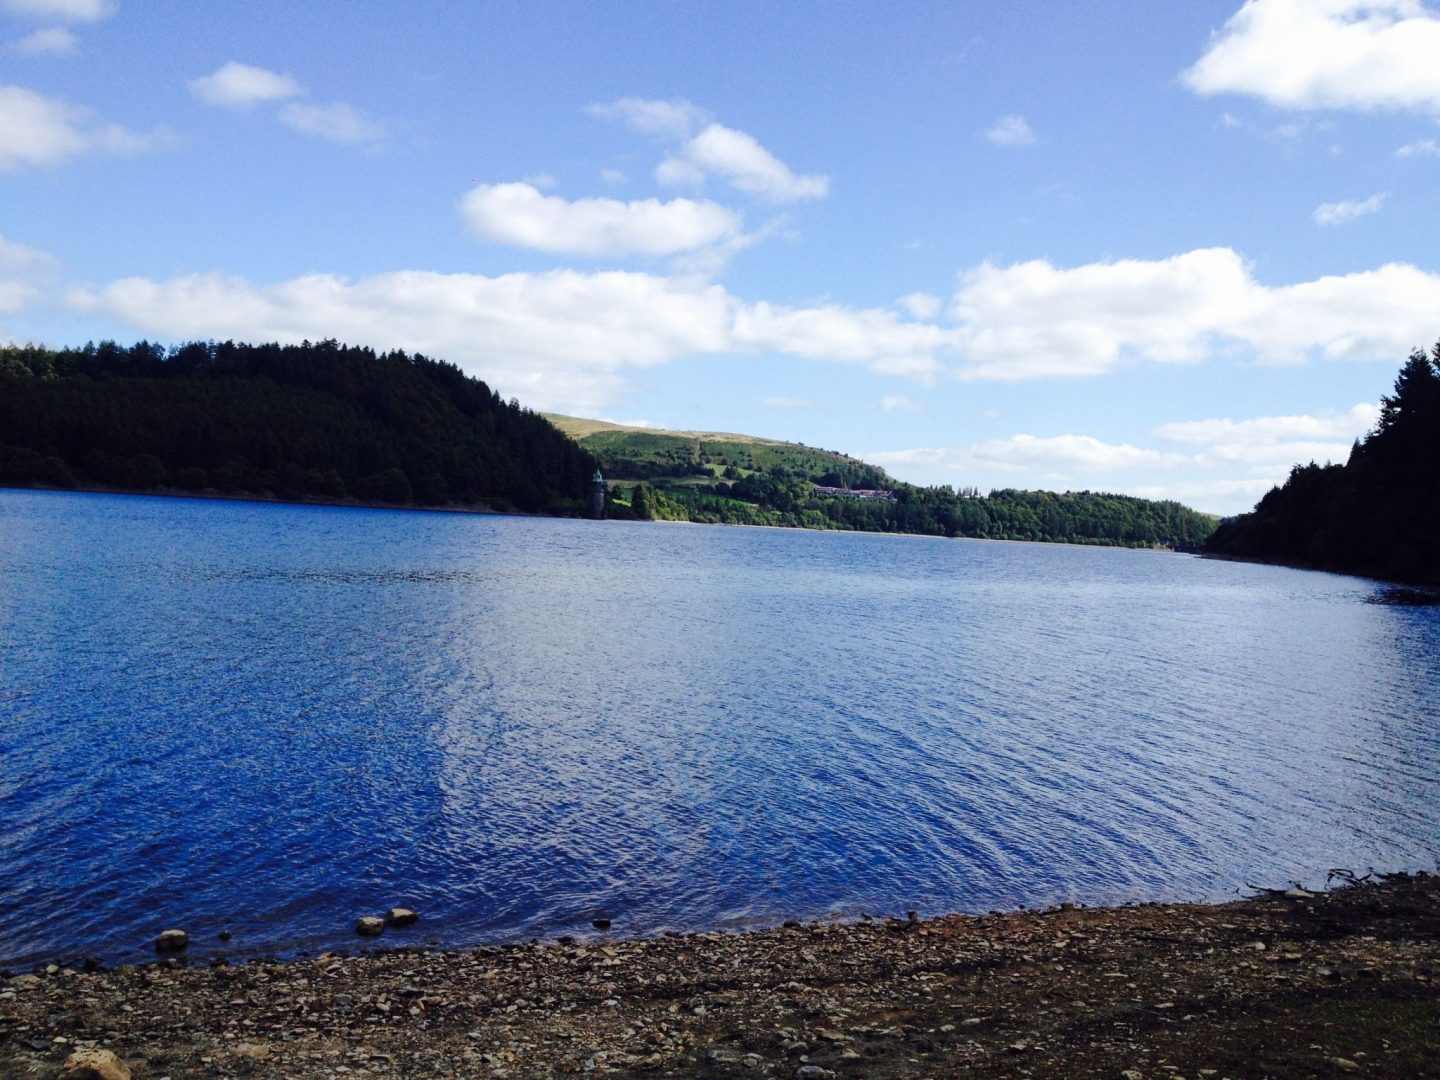 Views of Lake Vyrnwy, Wales